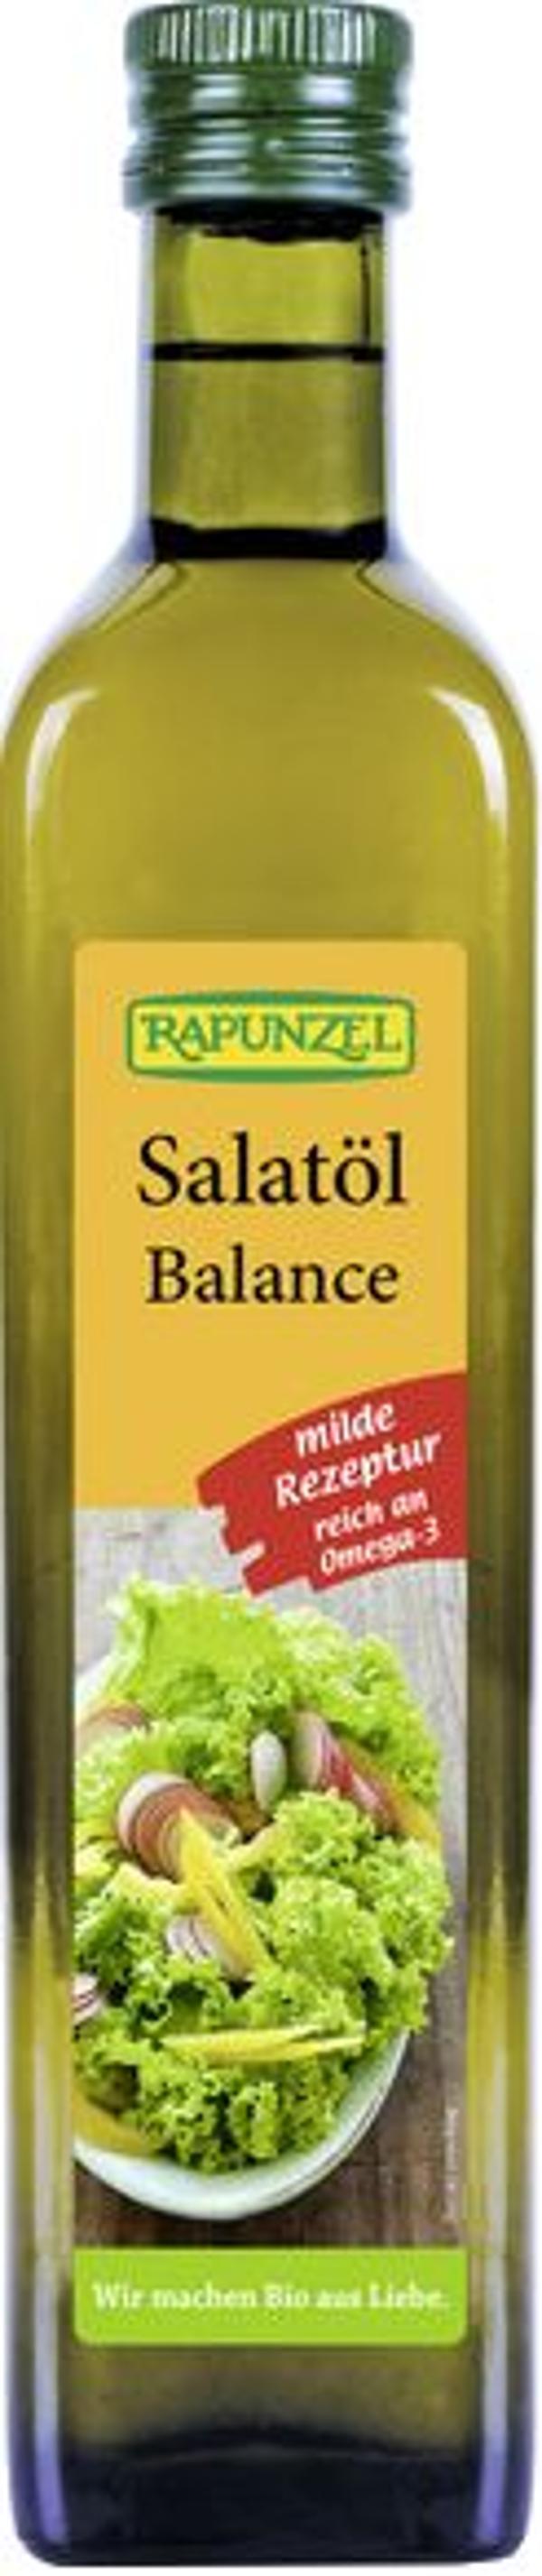 Produktfoto zu Salatöl Balance 0,5l feine Ölmischung